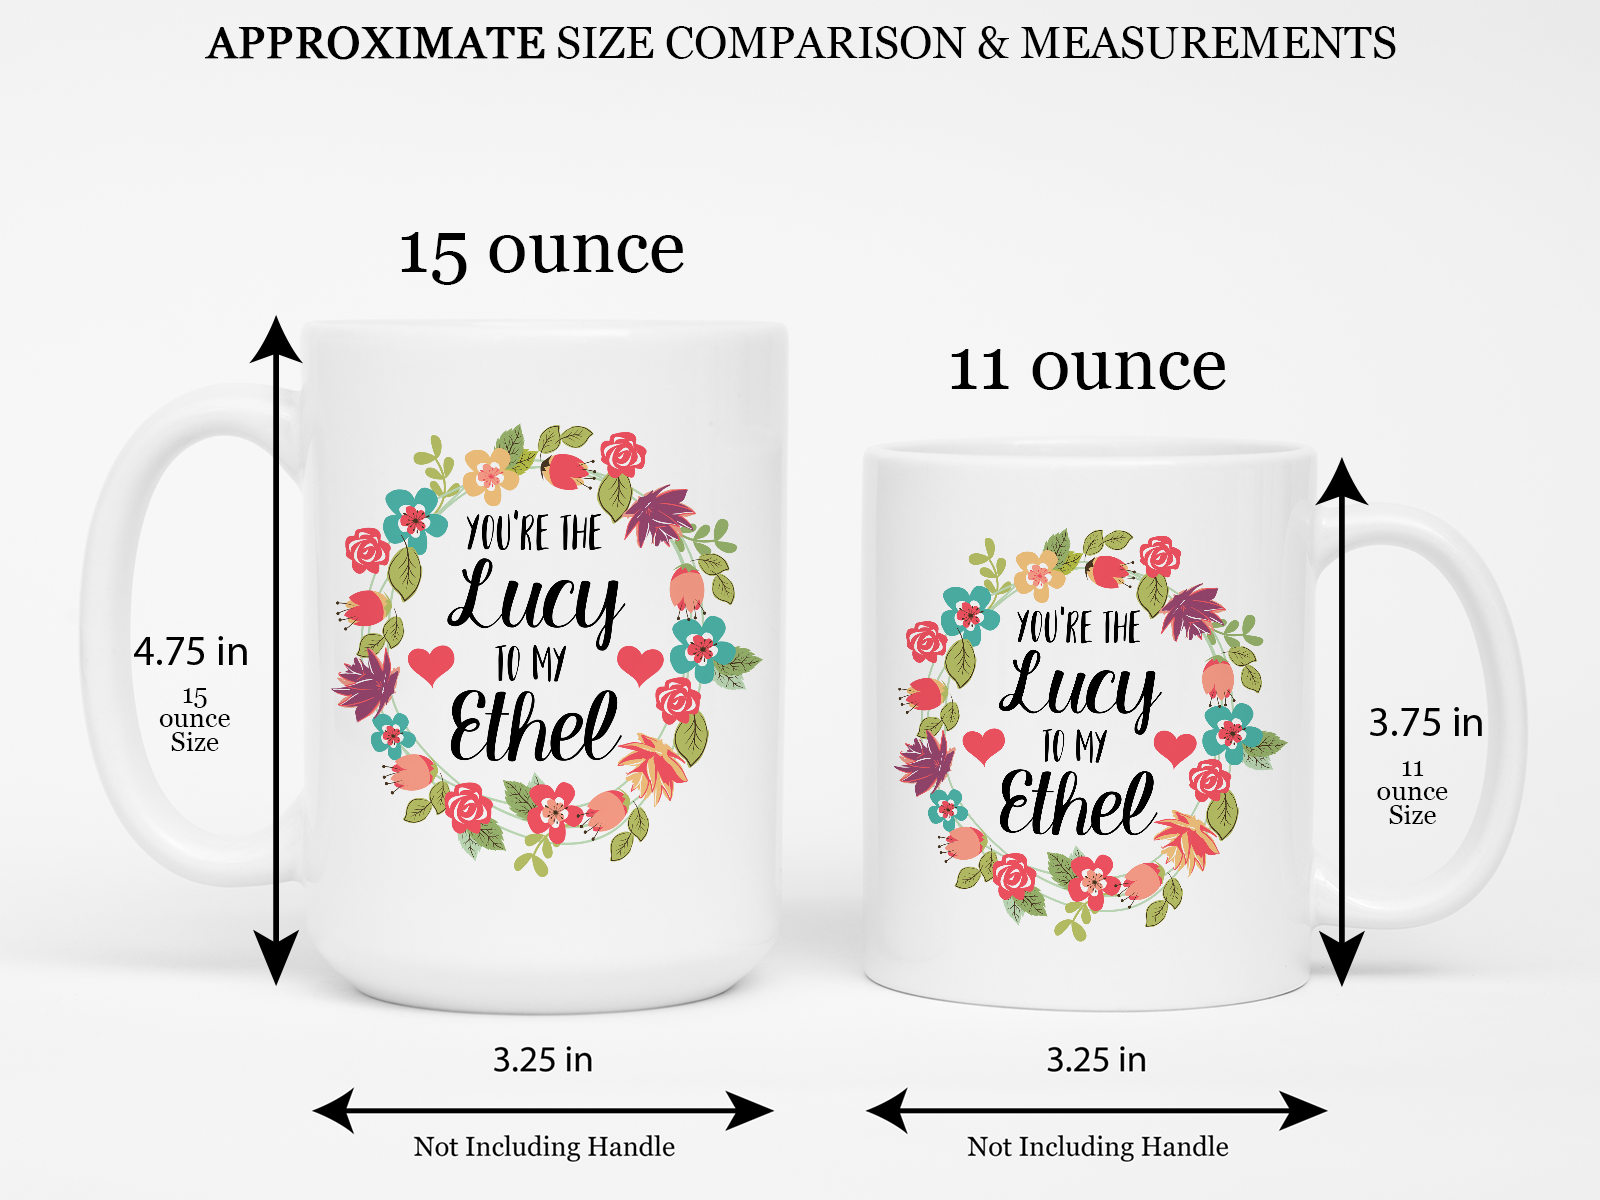 11 oz and 15 oz ceramic coffee mug comparison.